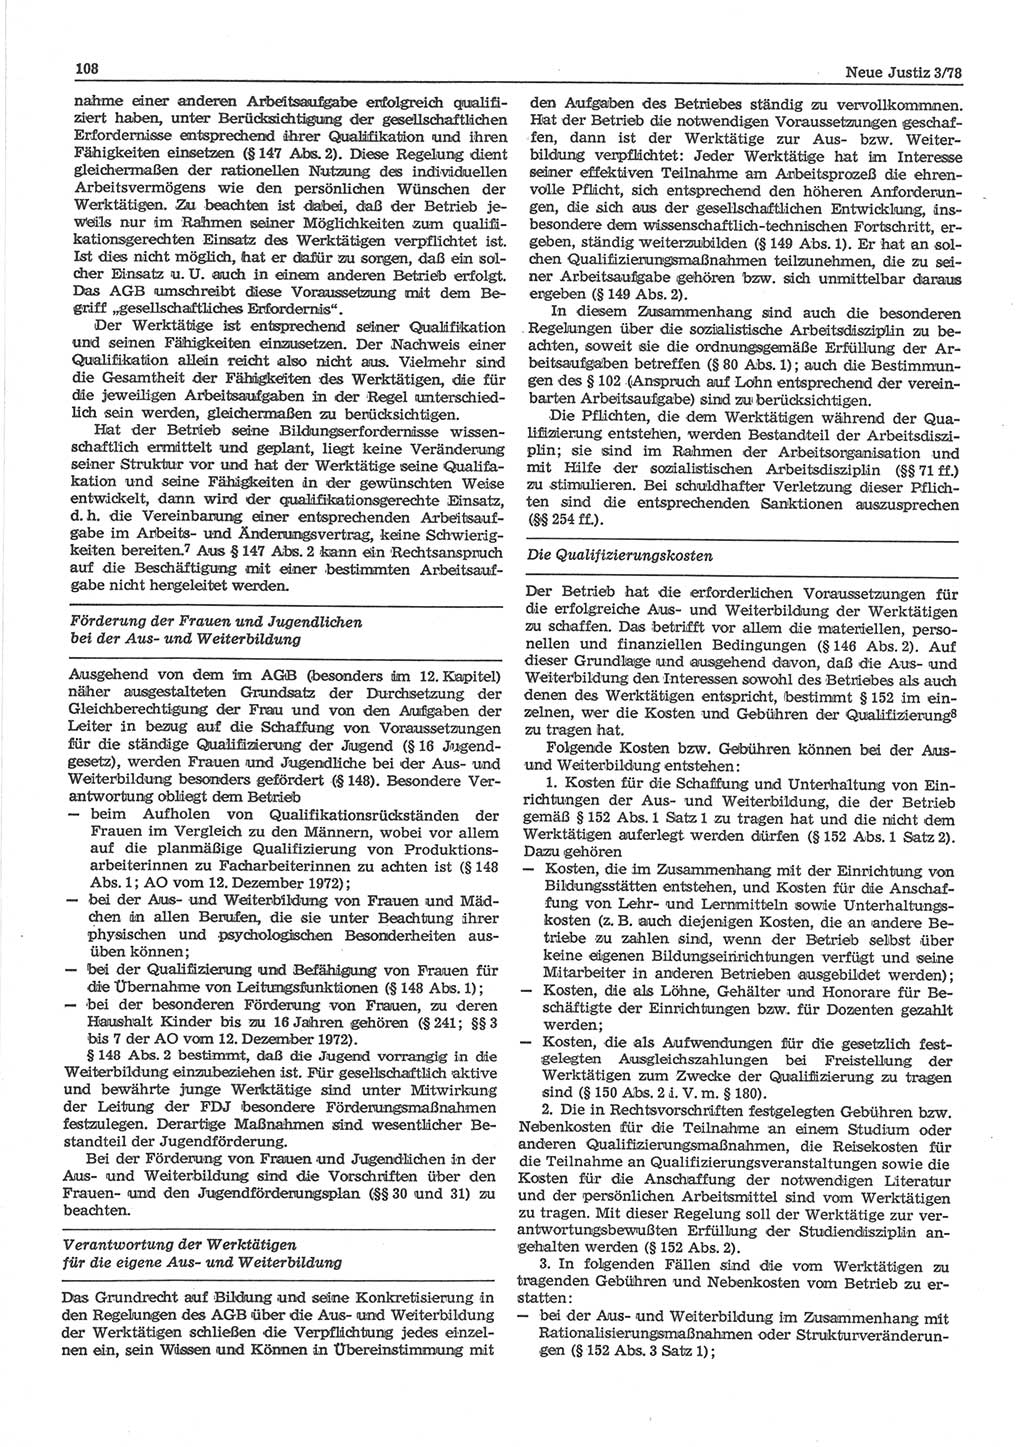 Neue Justiz (NJ), Zeitschrift für sozialistisches Recht und Gesetzlichkeit [Deutsche Demokratische Republik (DDR)], 32. Jahrgang 1978, Seite 108 (NJ DDR 1978, S. 108)